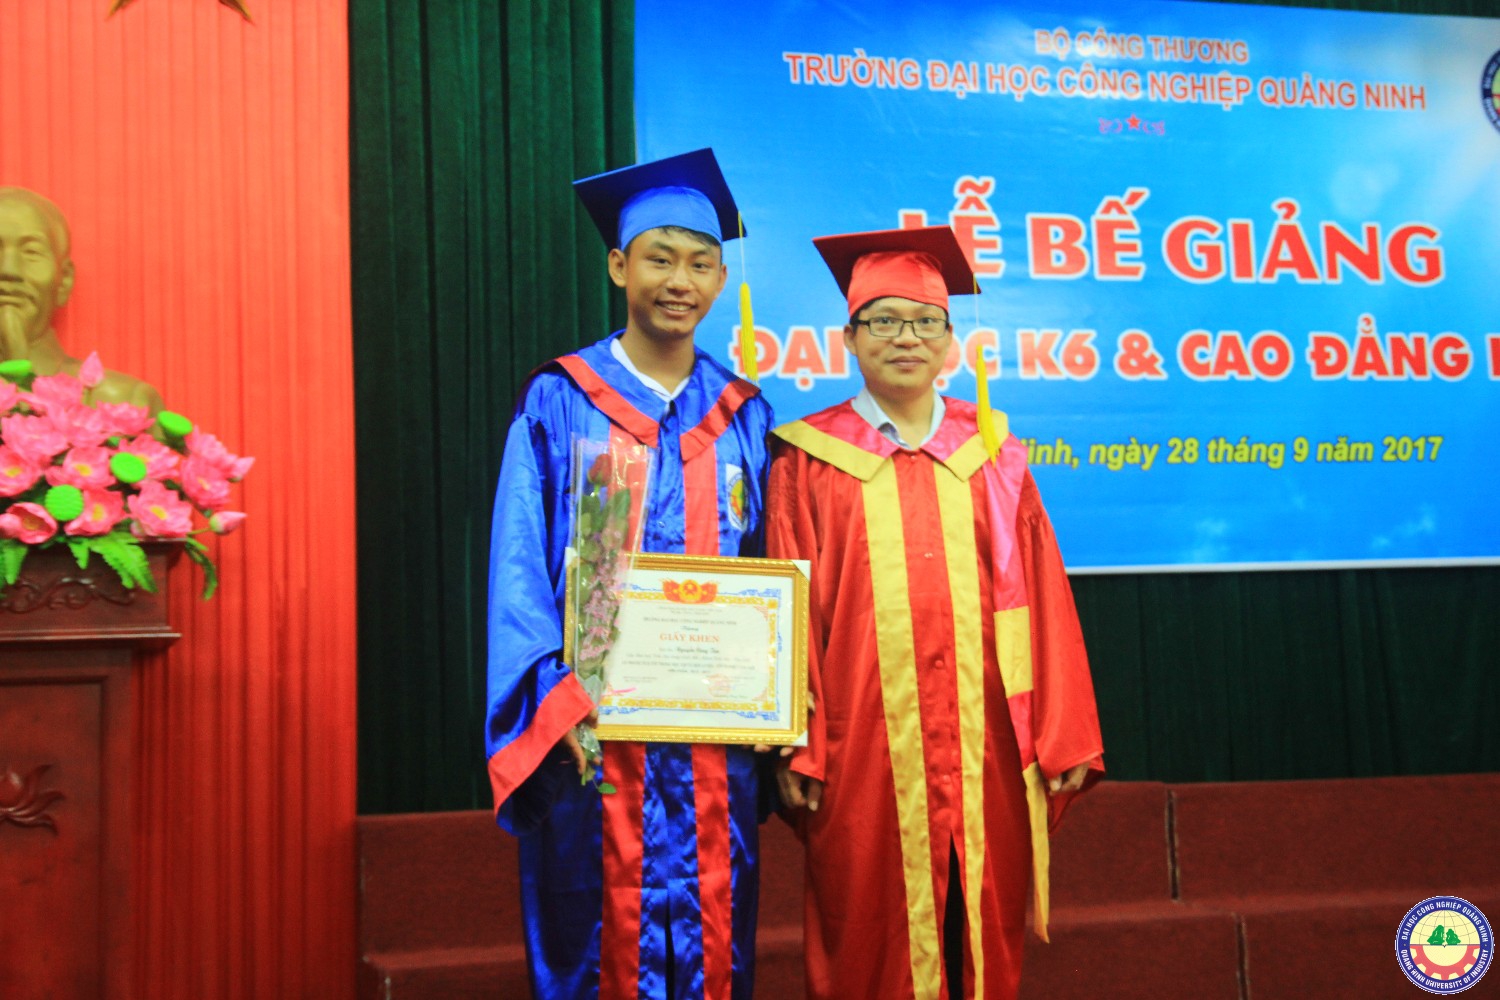 Lễ bế giảng và trao bằng tốt nghiệp K6